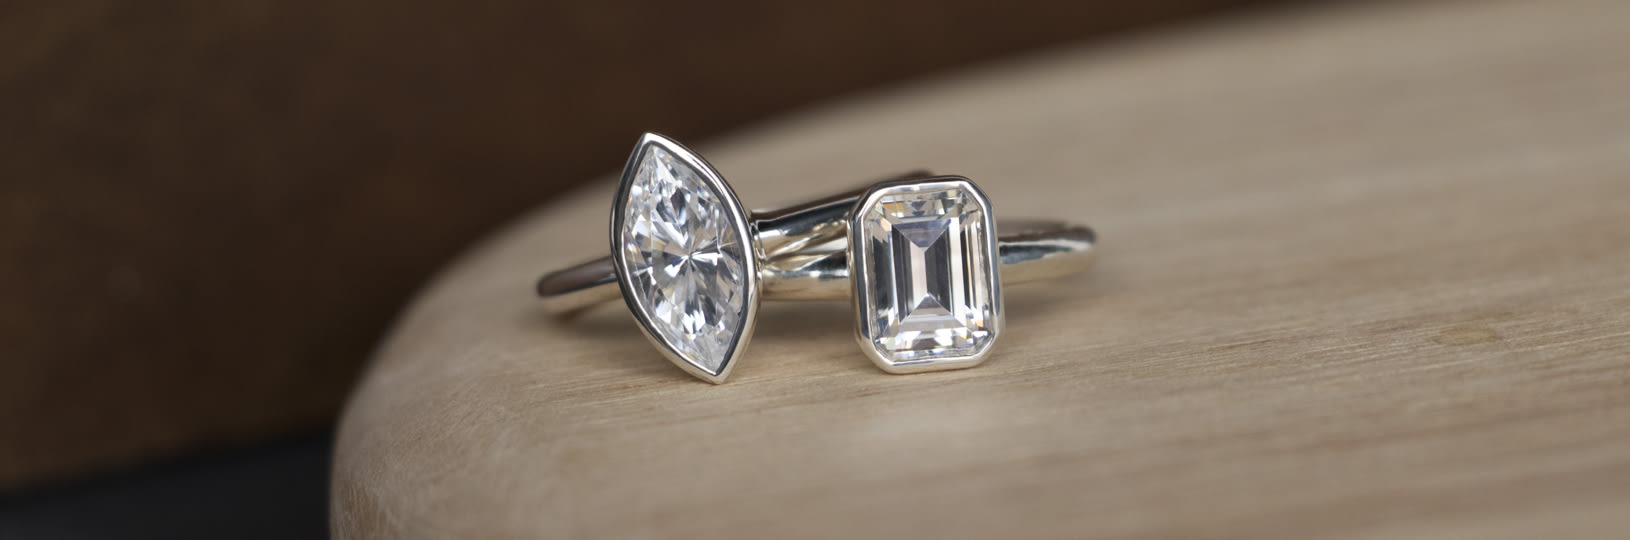 Two bezel set lab created diamond simulant engagement rings.